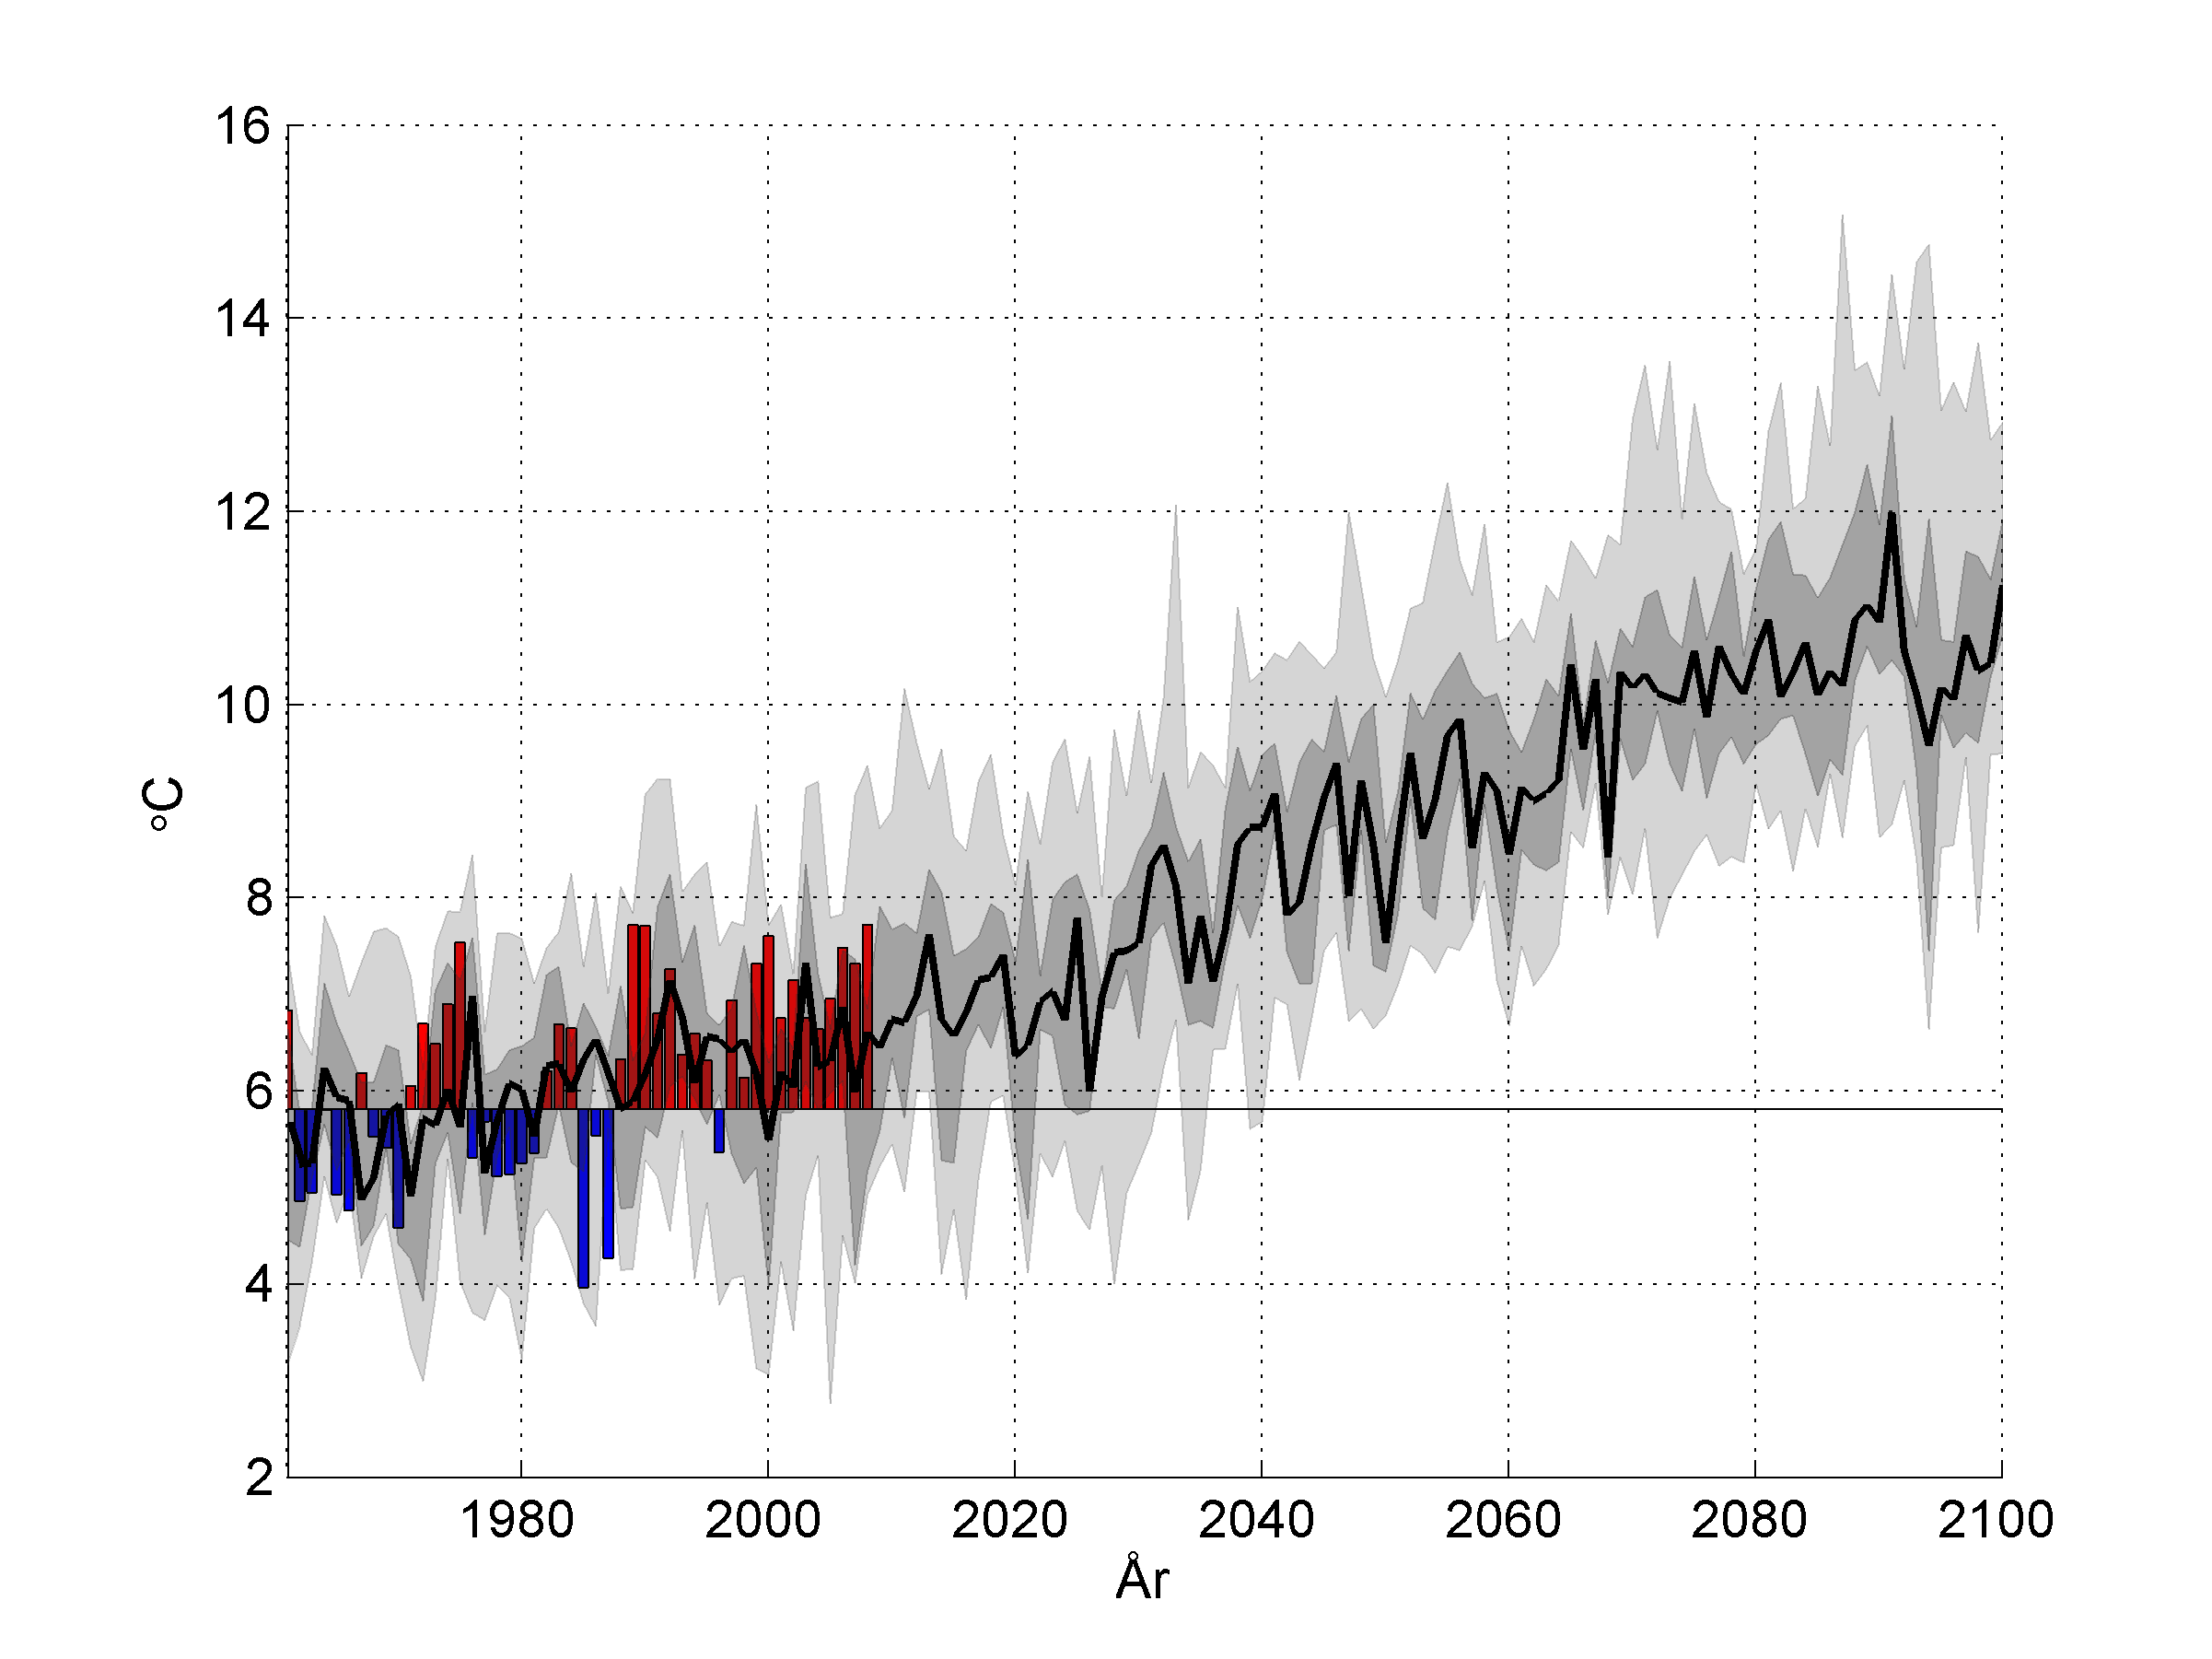 Beräknad utveckling av årsmedeltemperatur Ref.period: Medeltemp 5,8 grader 1961-1990 Observationer > ref.